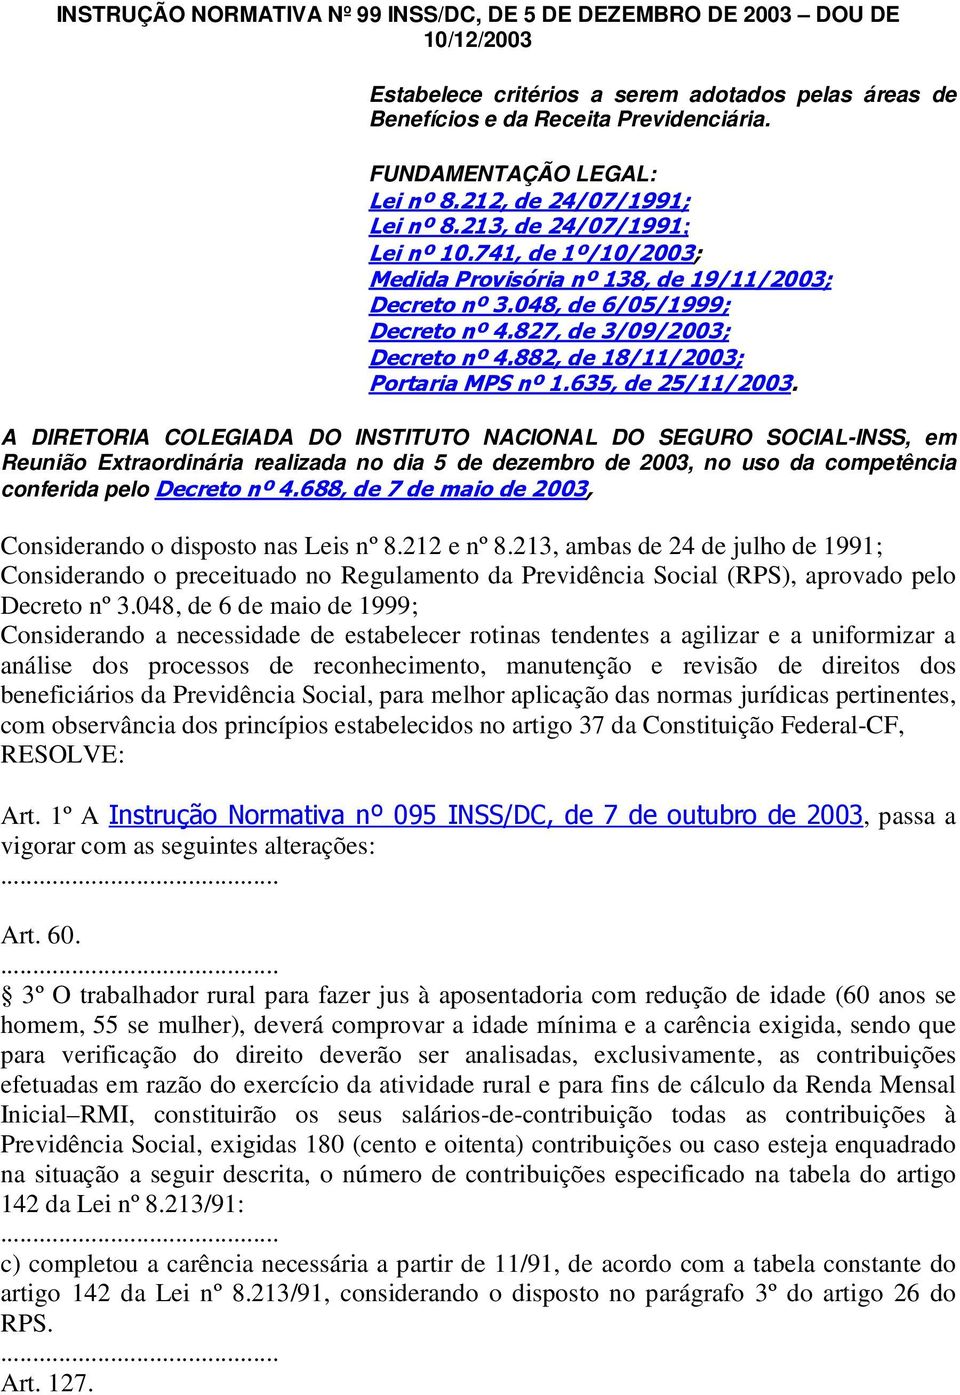 827, de 3/09/2003; Decreto nº 4.882, de 18/11/2003; Portaria MPS nº 1.635, de 25/11/2003.